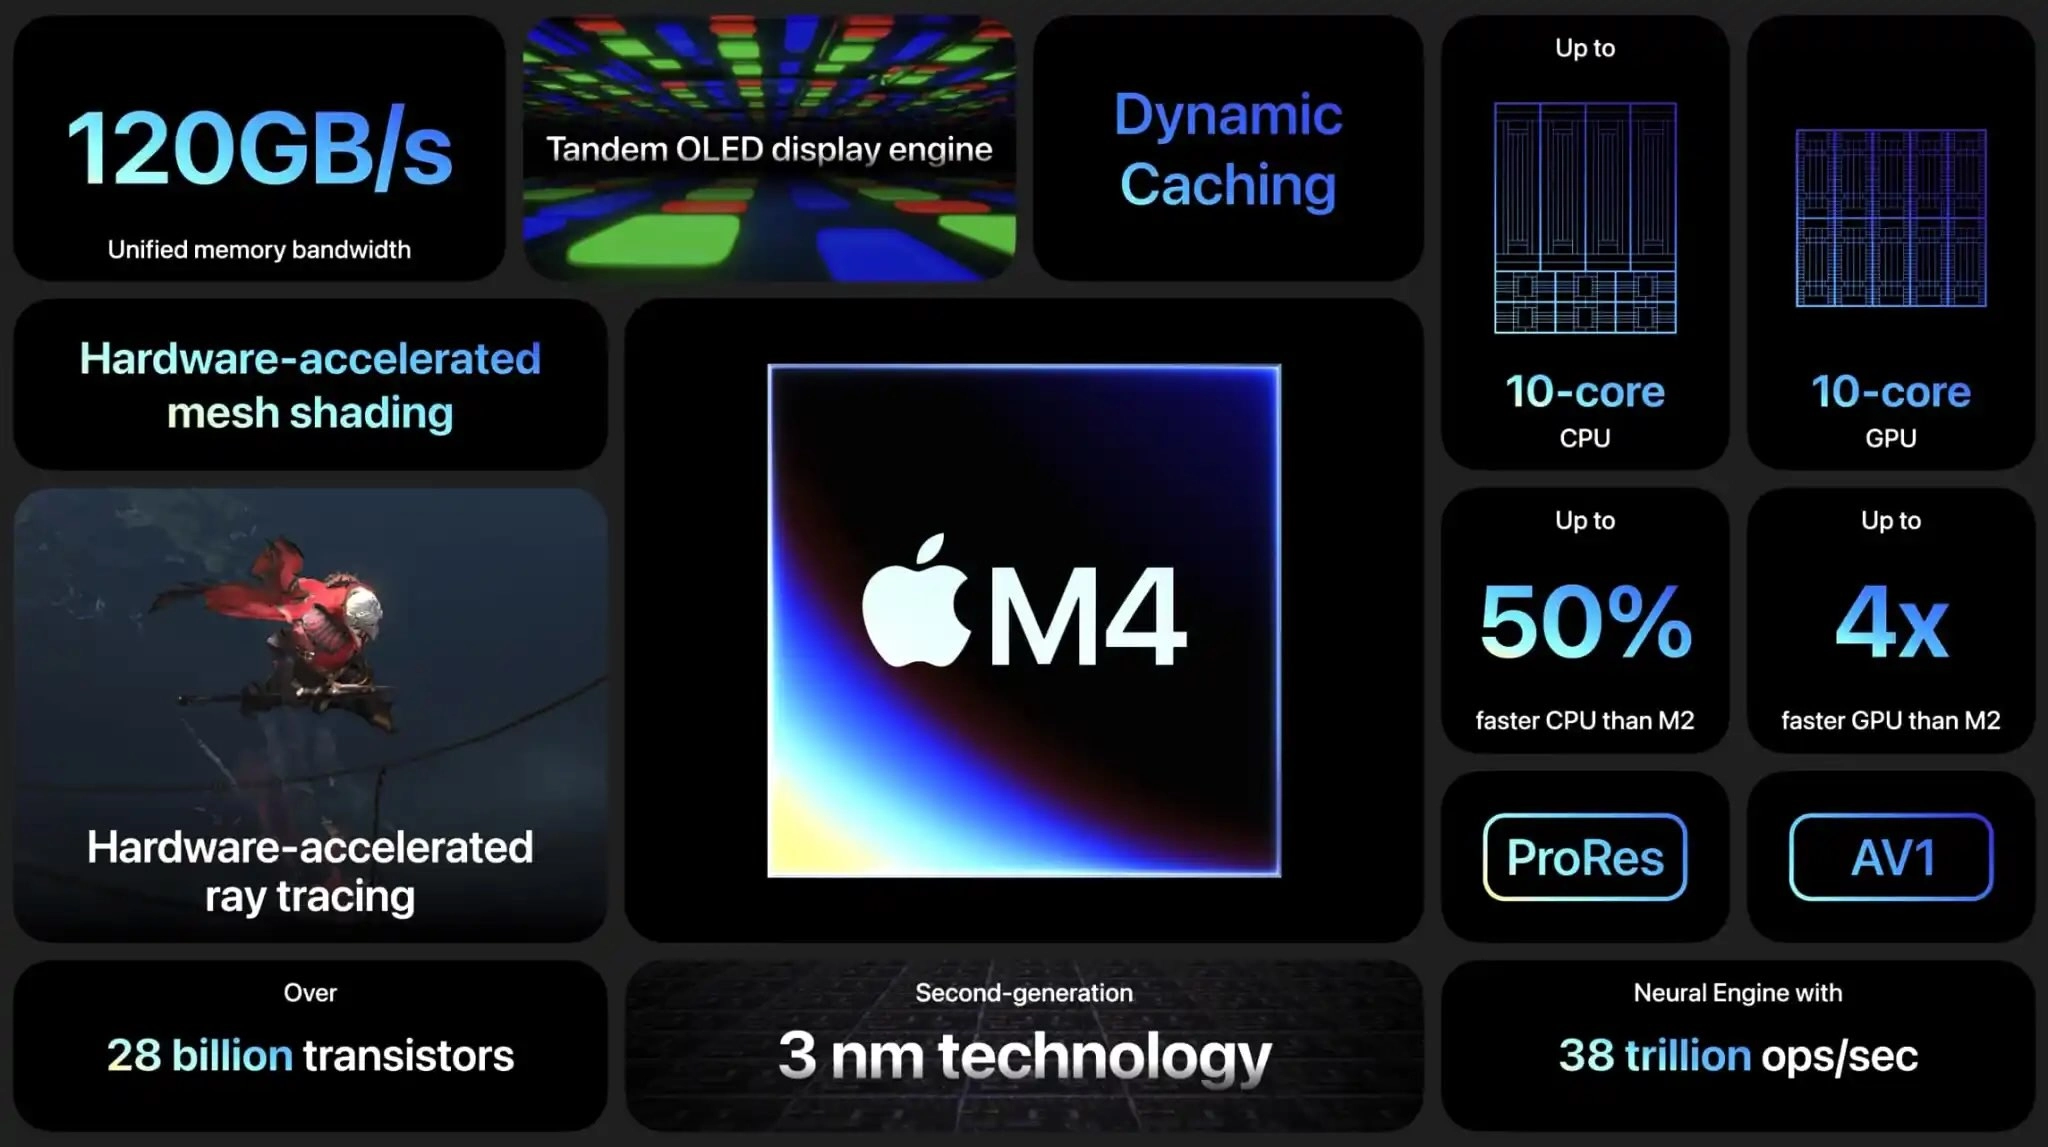 Phiên bản 9 nhân của chip M4 có hiệu năng vượt xa chip M2